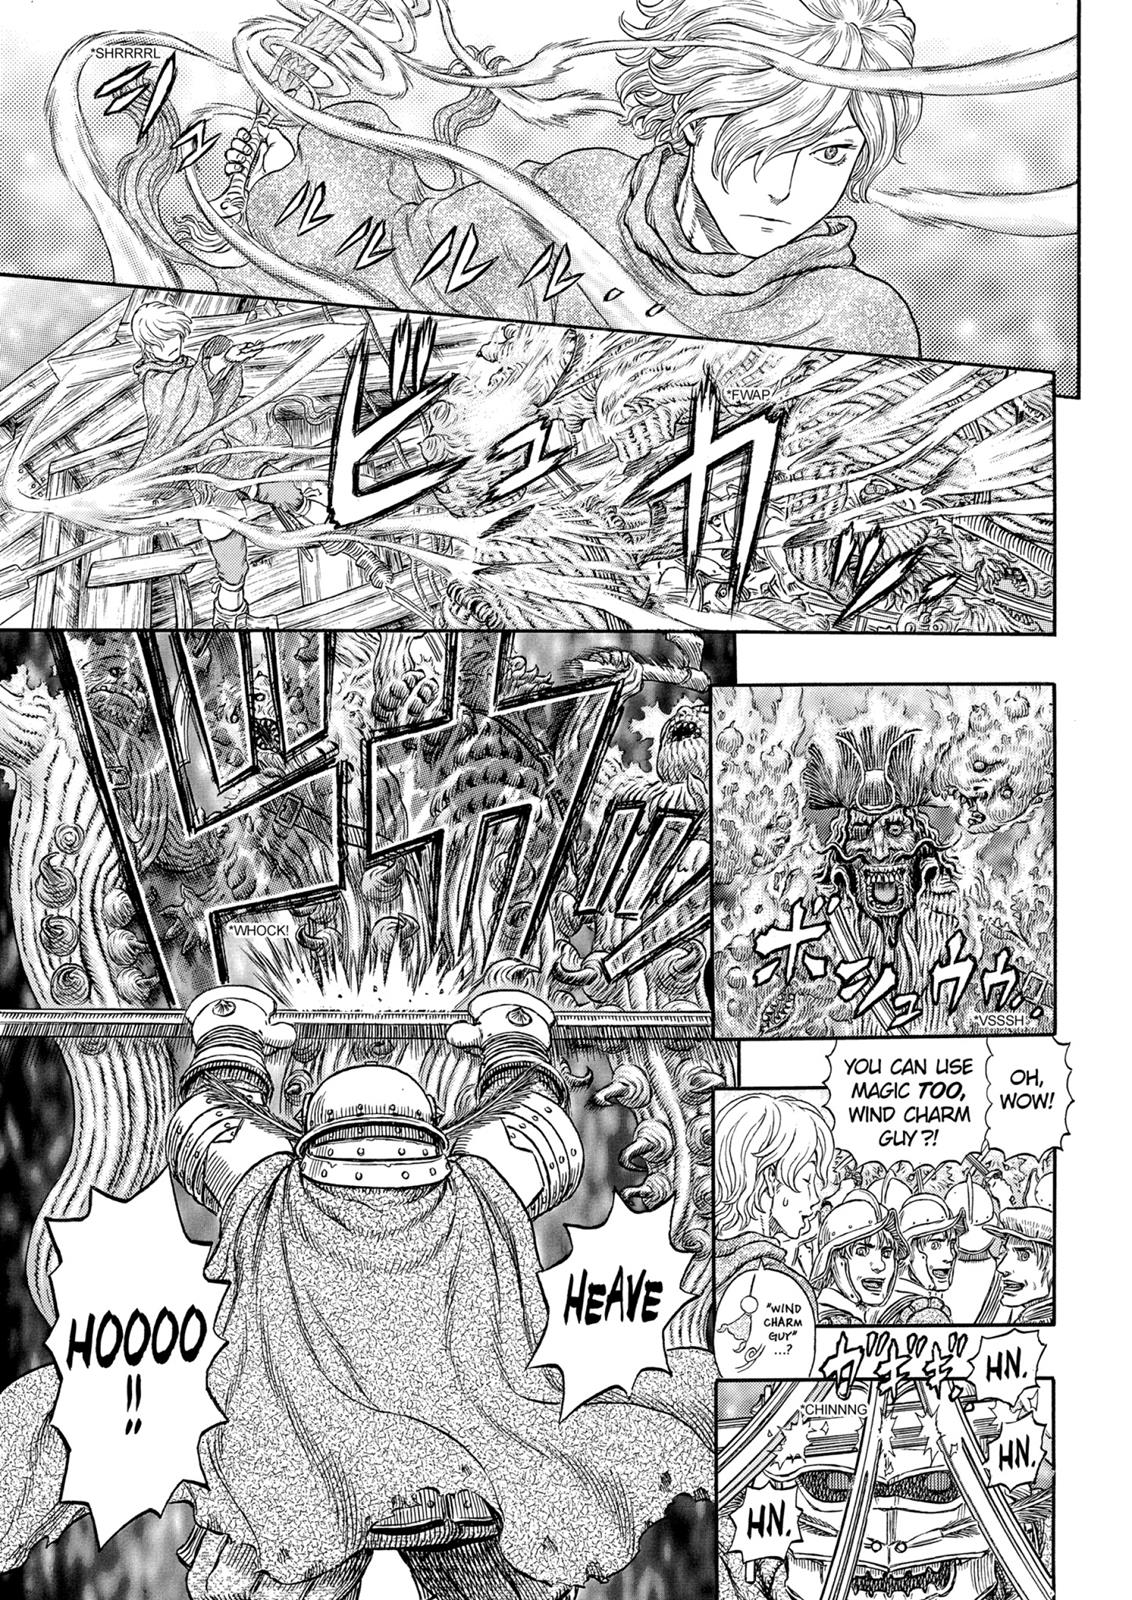 Berserk Manga Chapter 321 image 19